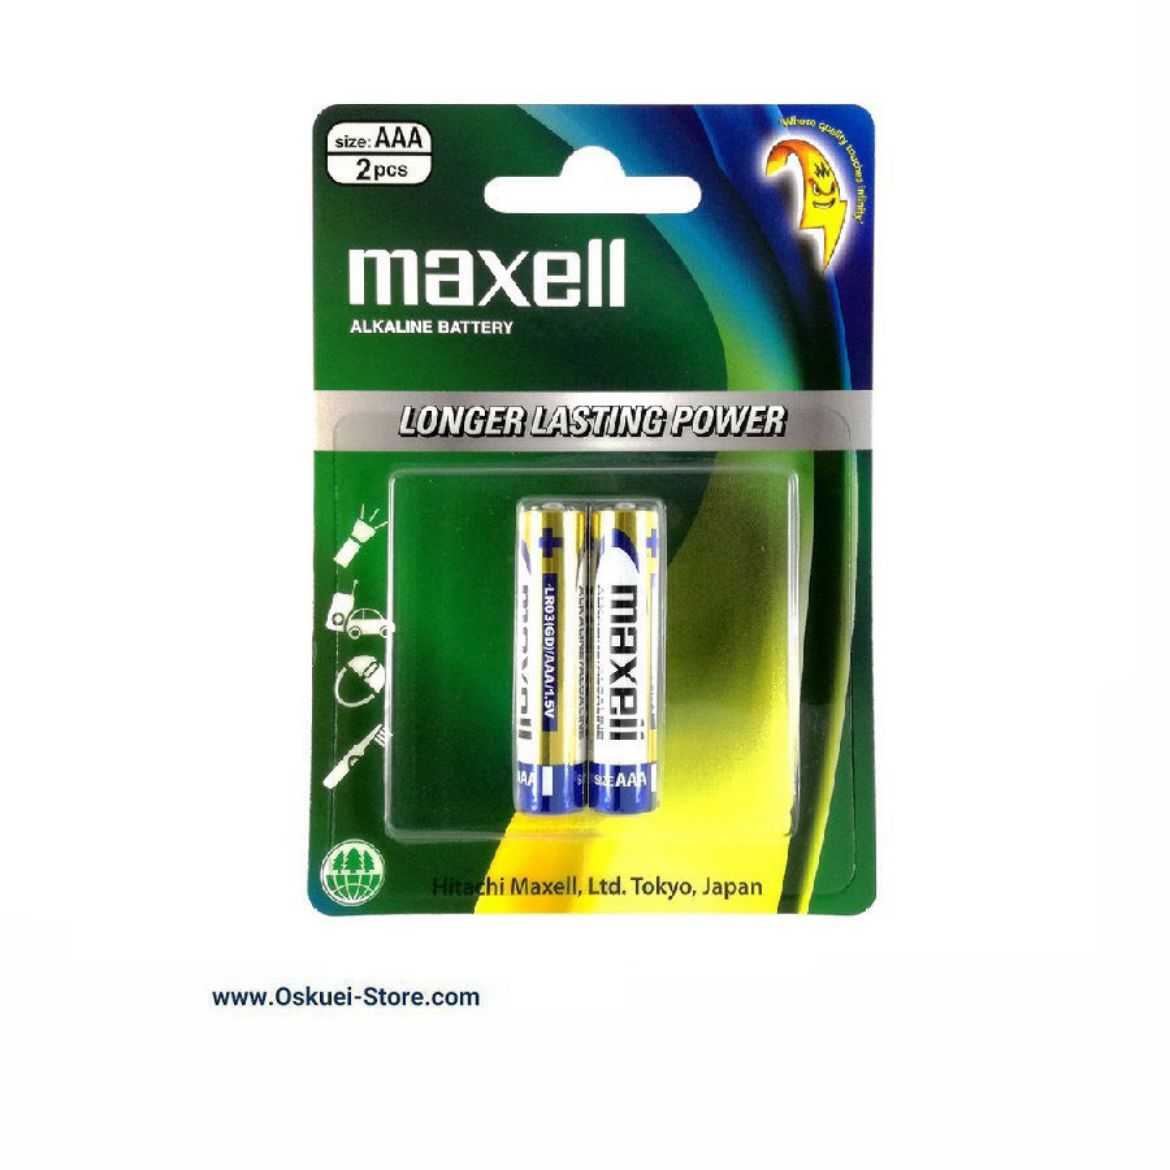 Maxell AAA Alkaline Battery